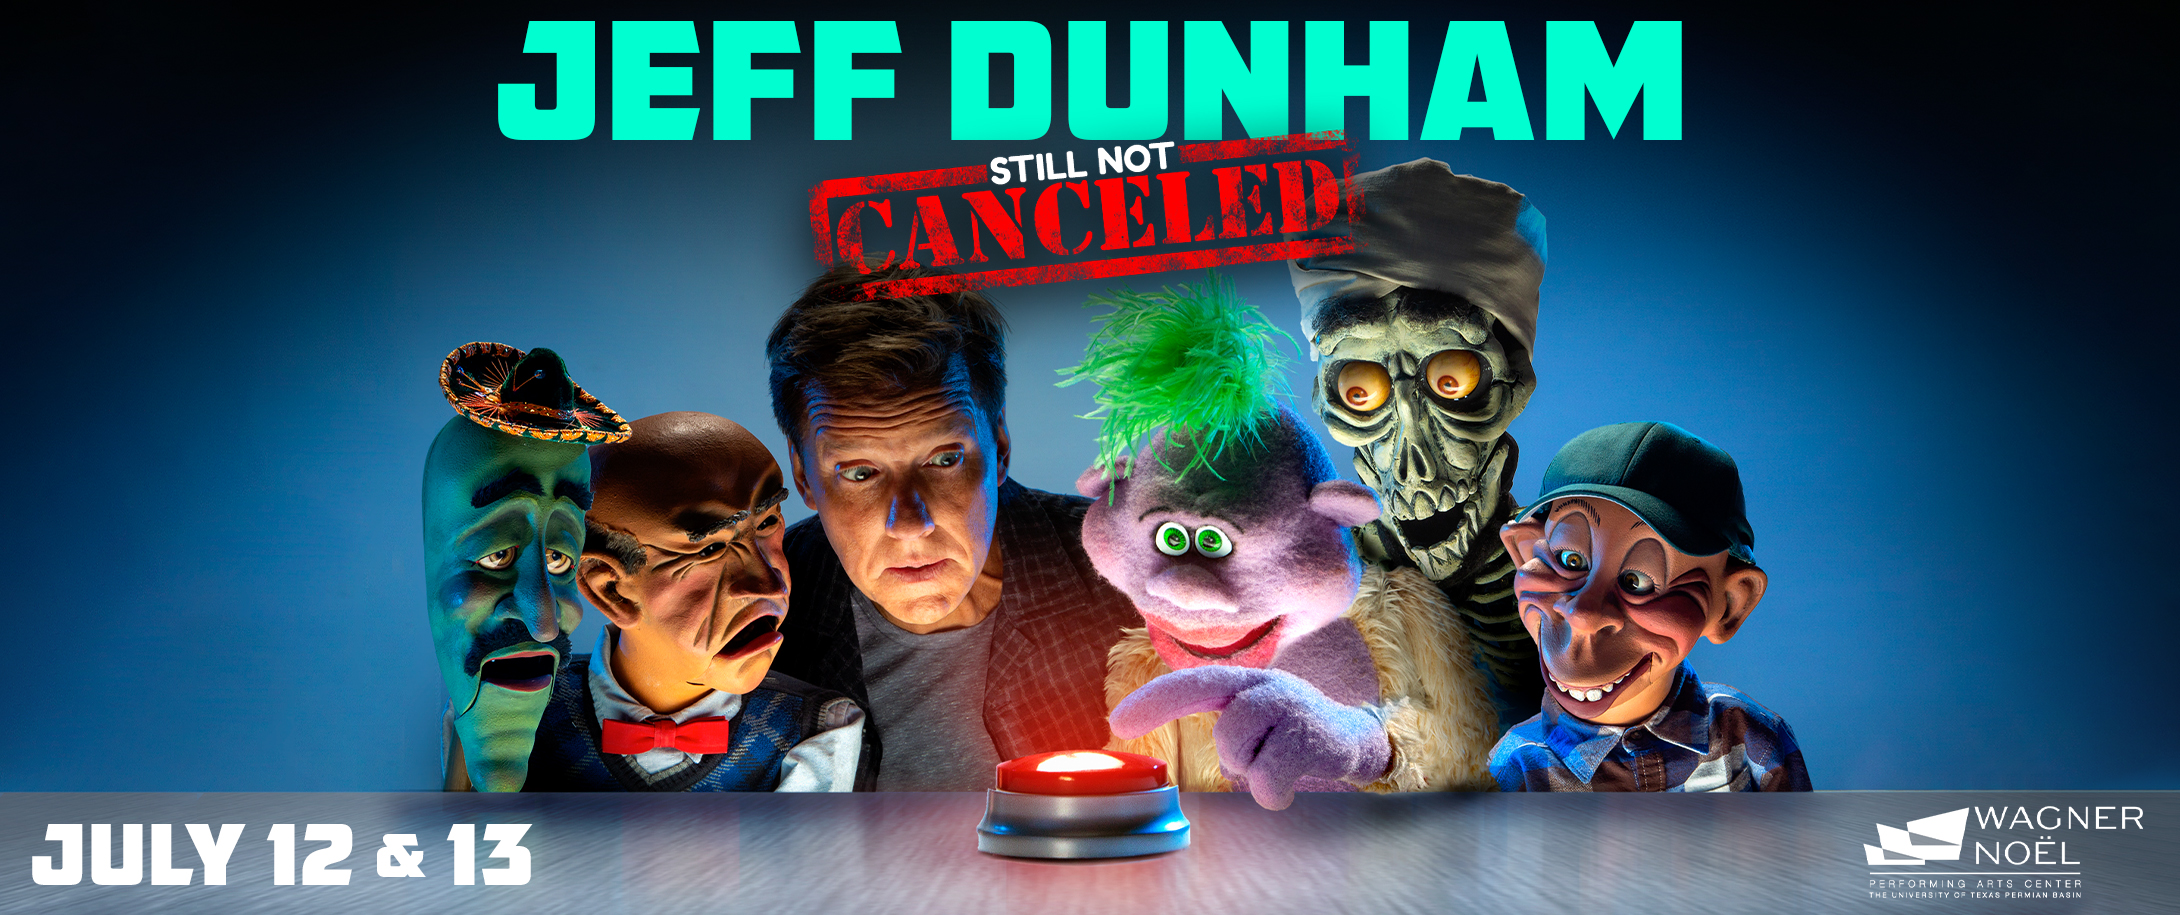 Jeff Dunham: Still Not Canceled 